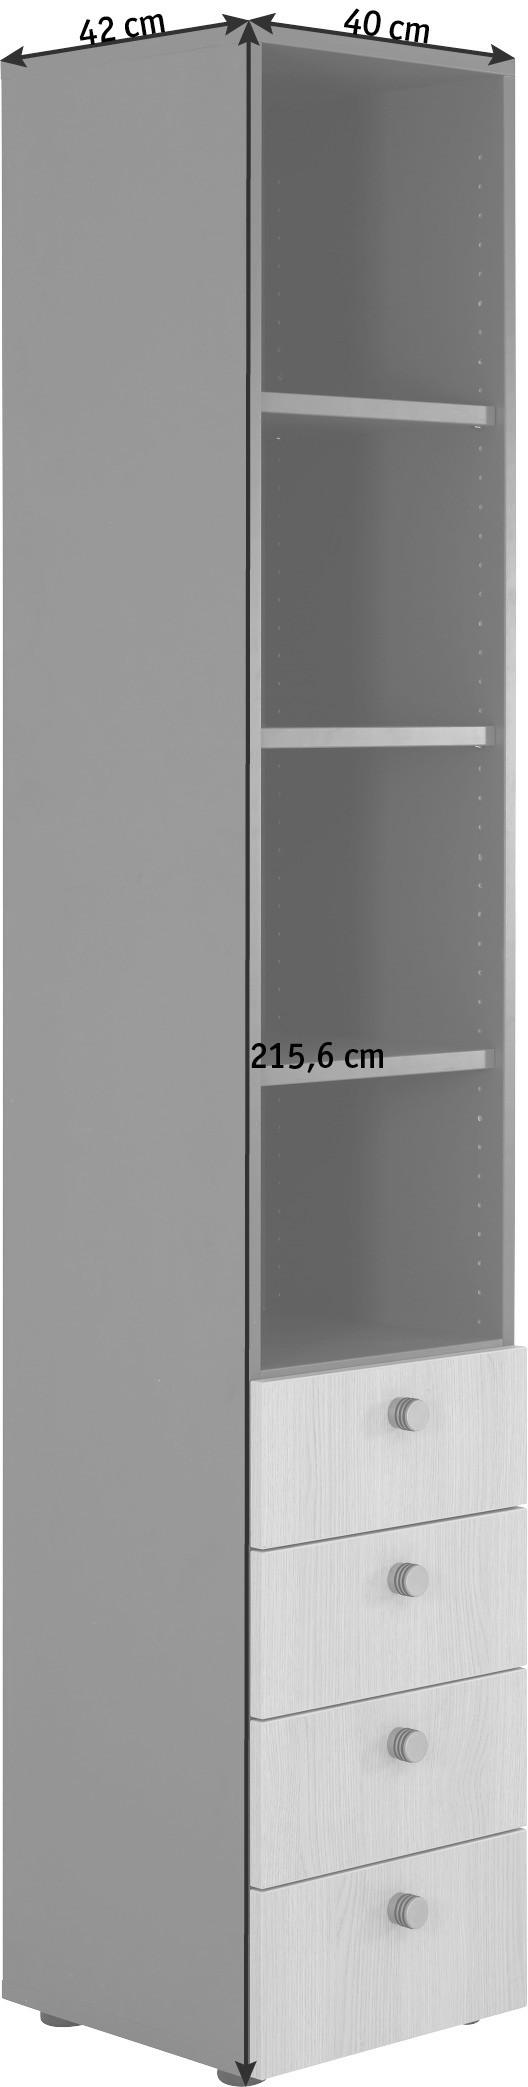 REGAL Weiß, Nussbaumfarben  - Nussbaumfarben/Alufarben, KONVENTIONELL, Holzwerkstoff/Metall (40/215,6/42cm)